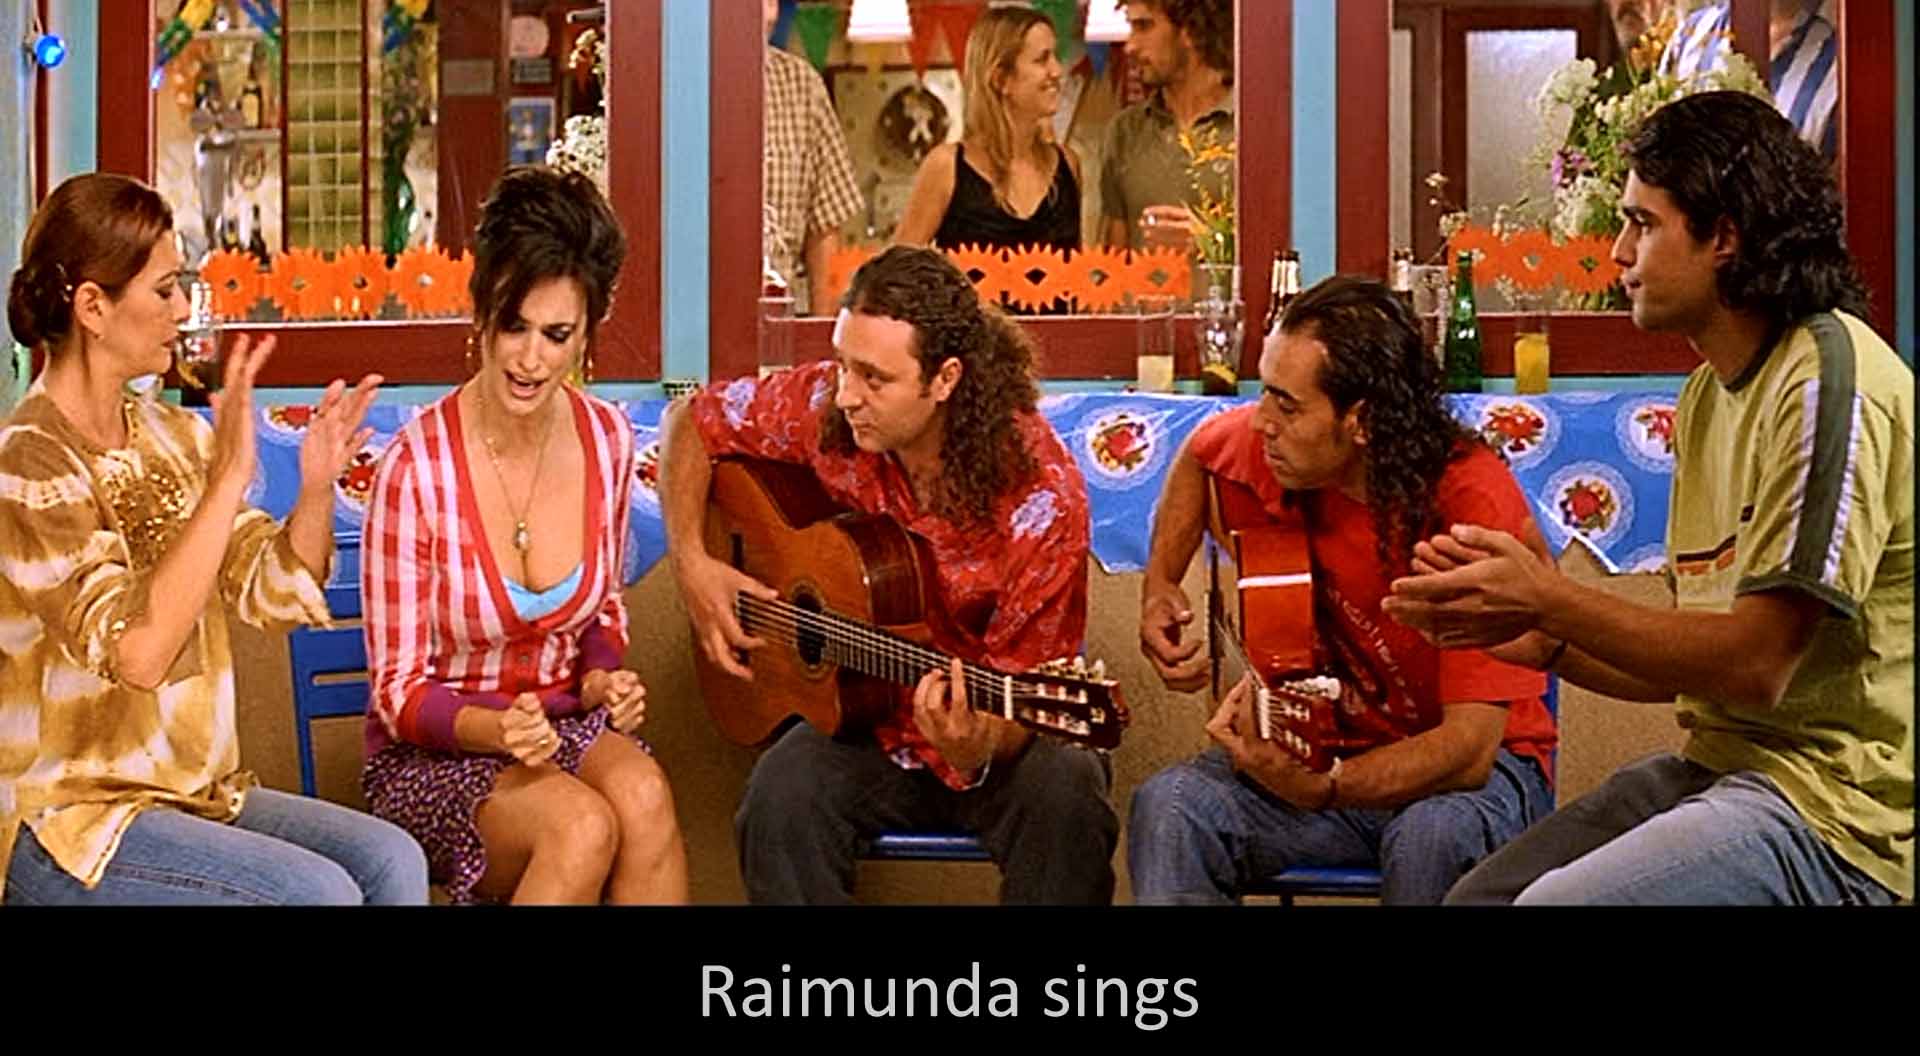 Raimunda sings